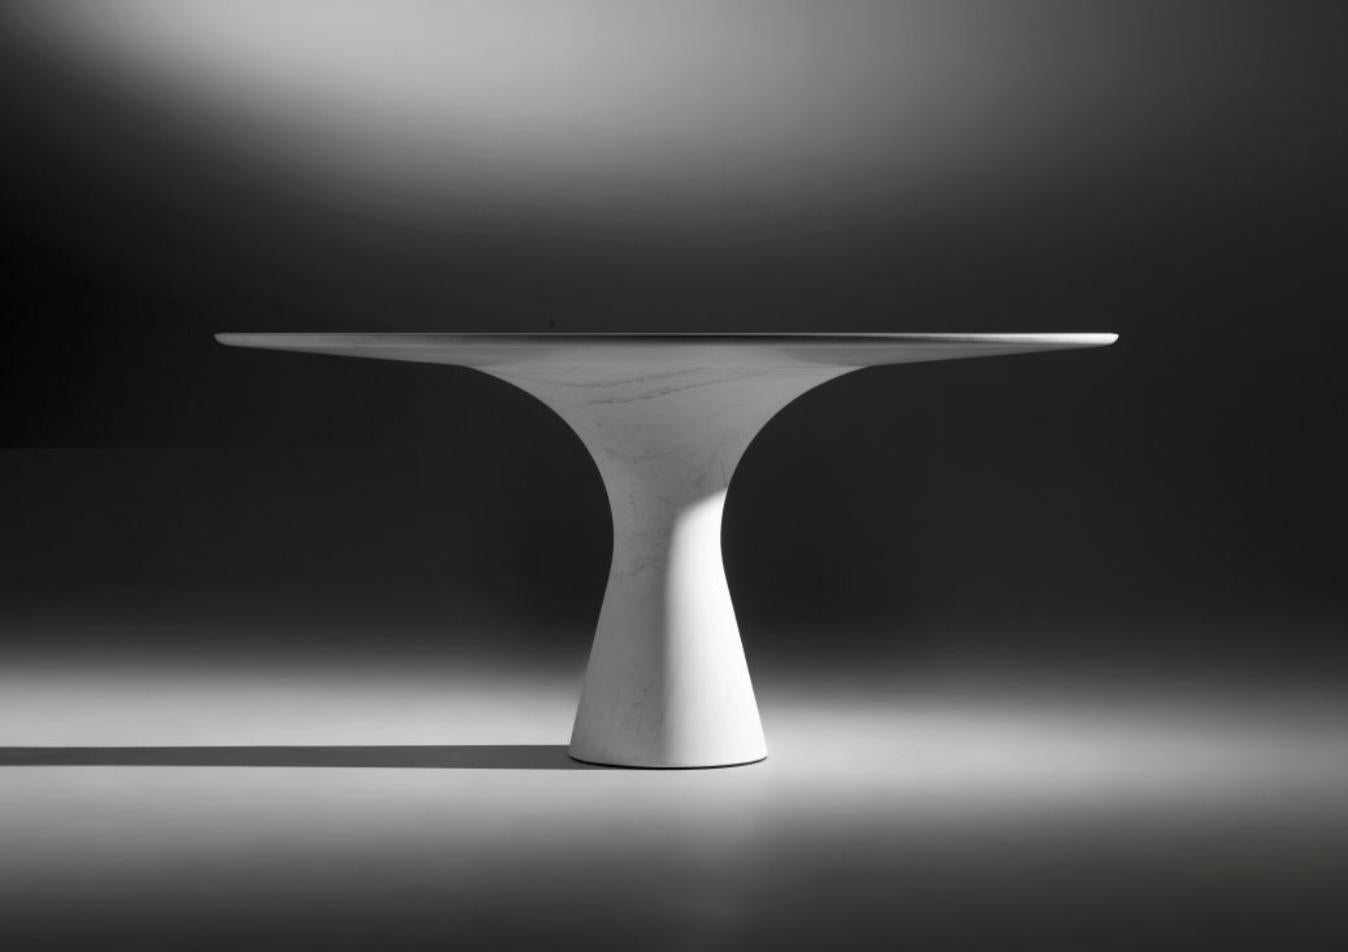 Kynos Raffinierter niedriger runder Tisch aus Marmor
Abmessungen: 100 x H 36 cm
MATERIALIEN: Kynos
Angelo ist die Essenz eines runden Tisches aus Naturstein, eine skulpturale Form aus robustem Material mit eleganten Linien und raffinierten